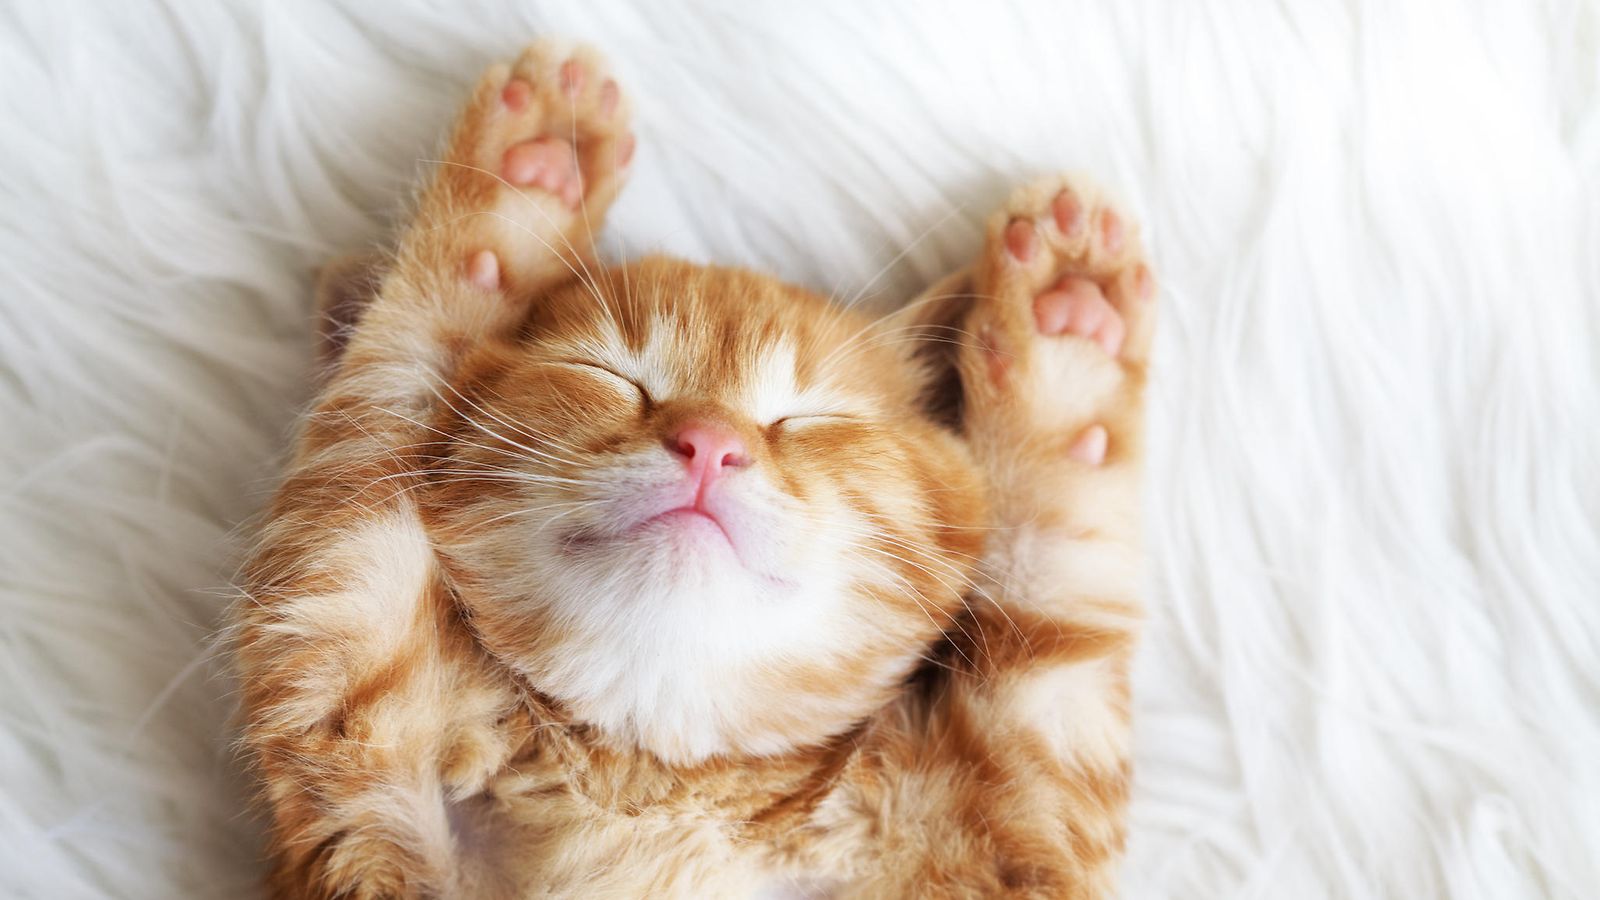 Somen suloinen suosikki: Kissanpennun hellyttävä tapa nukkua herättää  ihastusta 